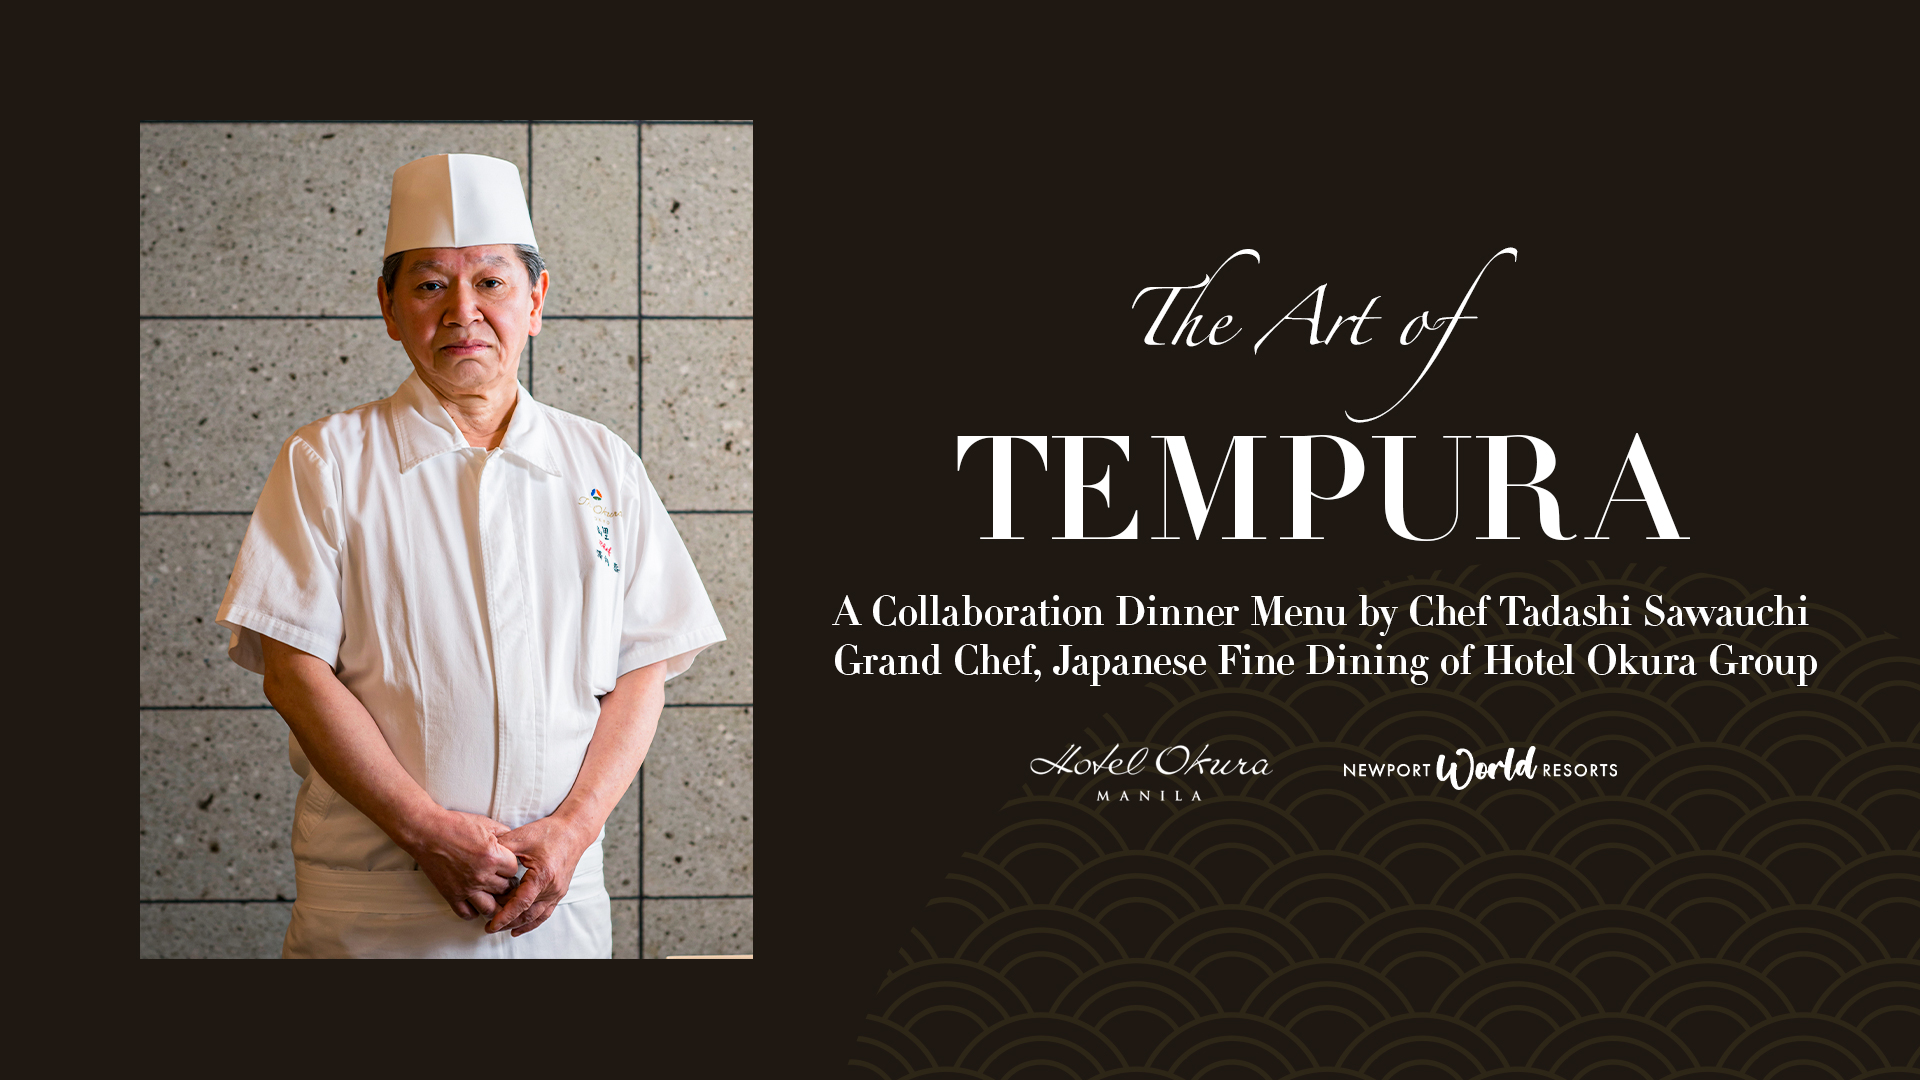 The Art of Tempura